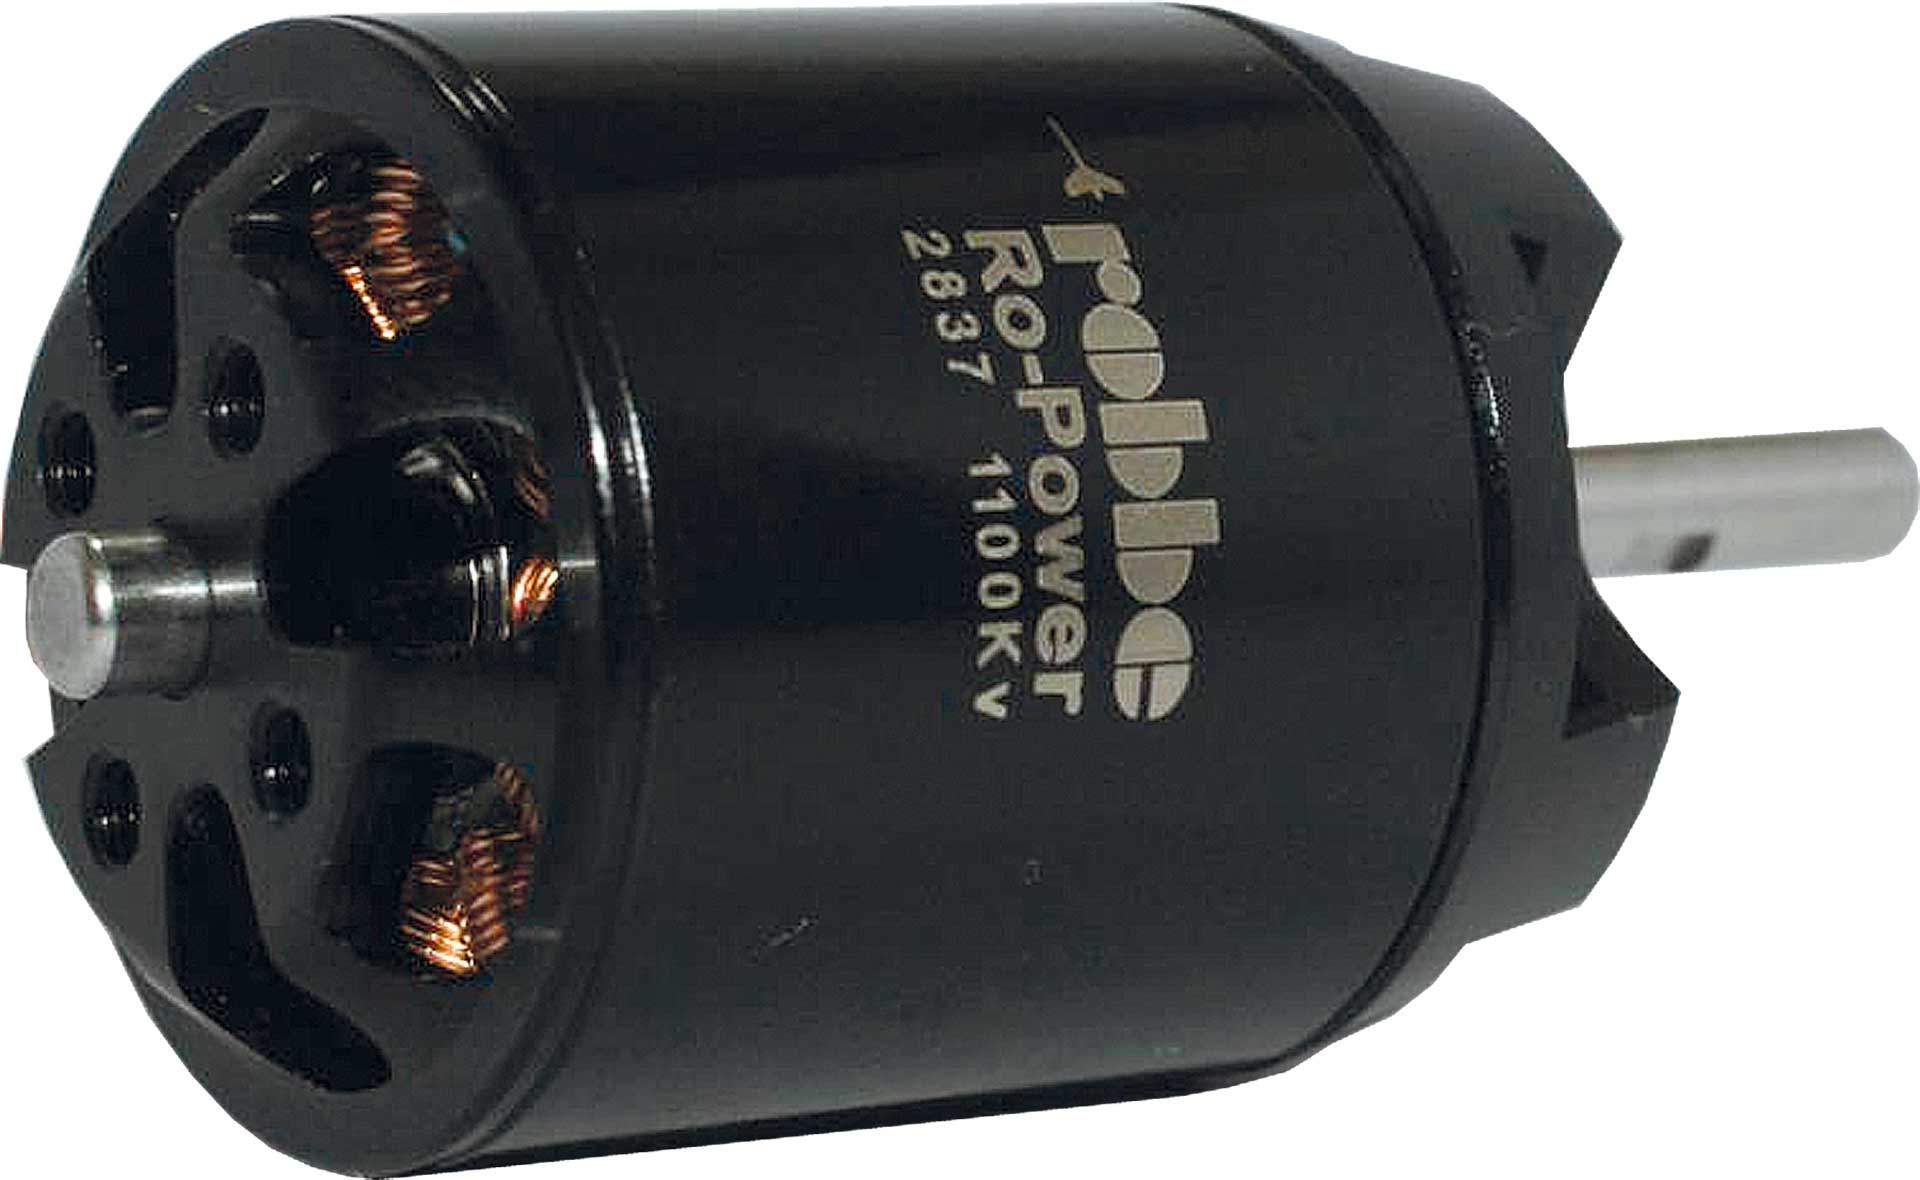 Robbe Modellsport RO-POWER TORQUE 2837 1100 K/V MOTEUR BRUSHLESS